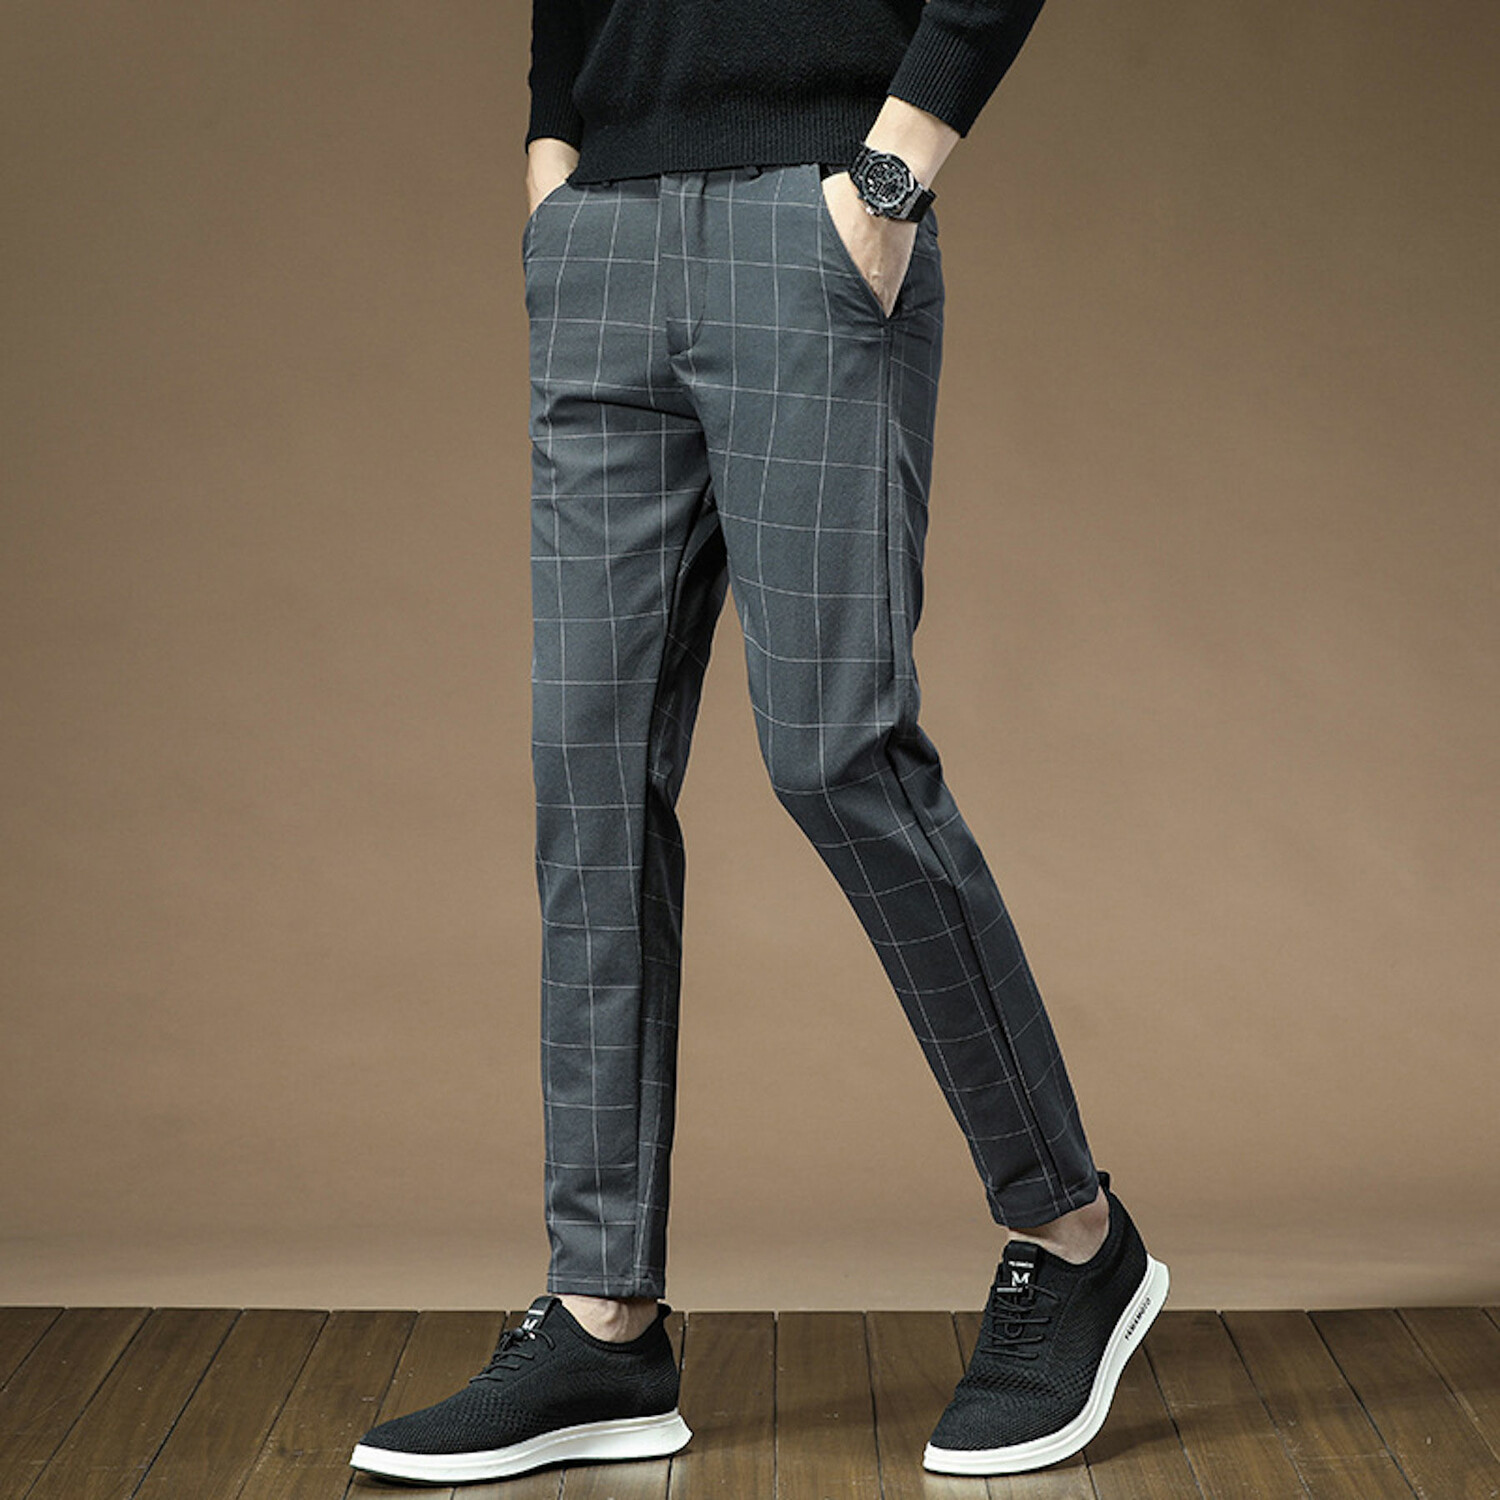 Wide Grid Print Slim Fit Pants // Gray (31) - Amedeo Exclusive Slim Fit ...